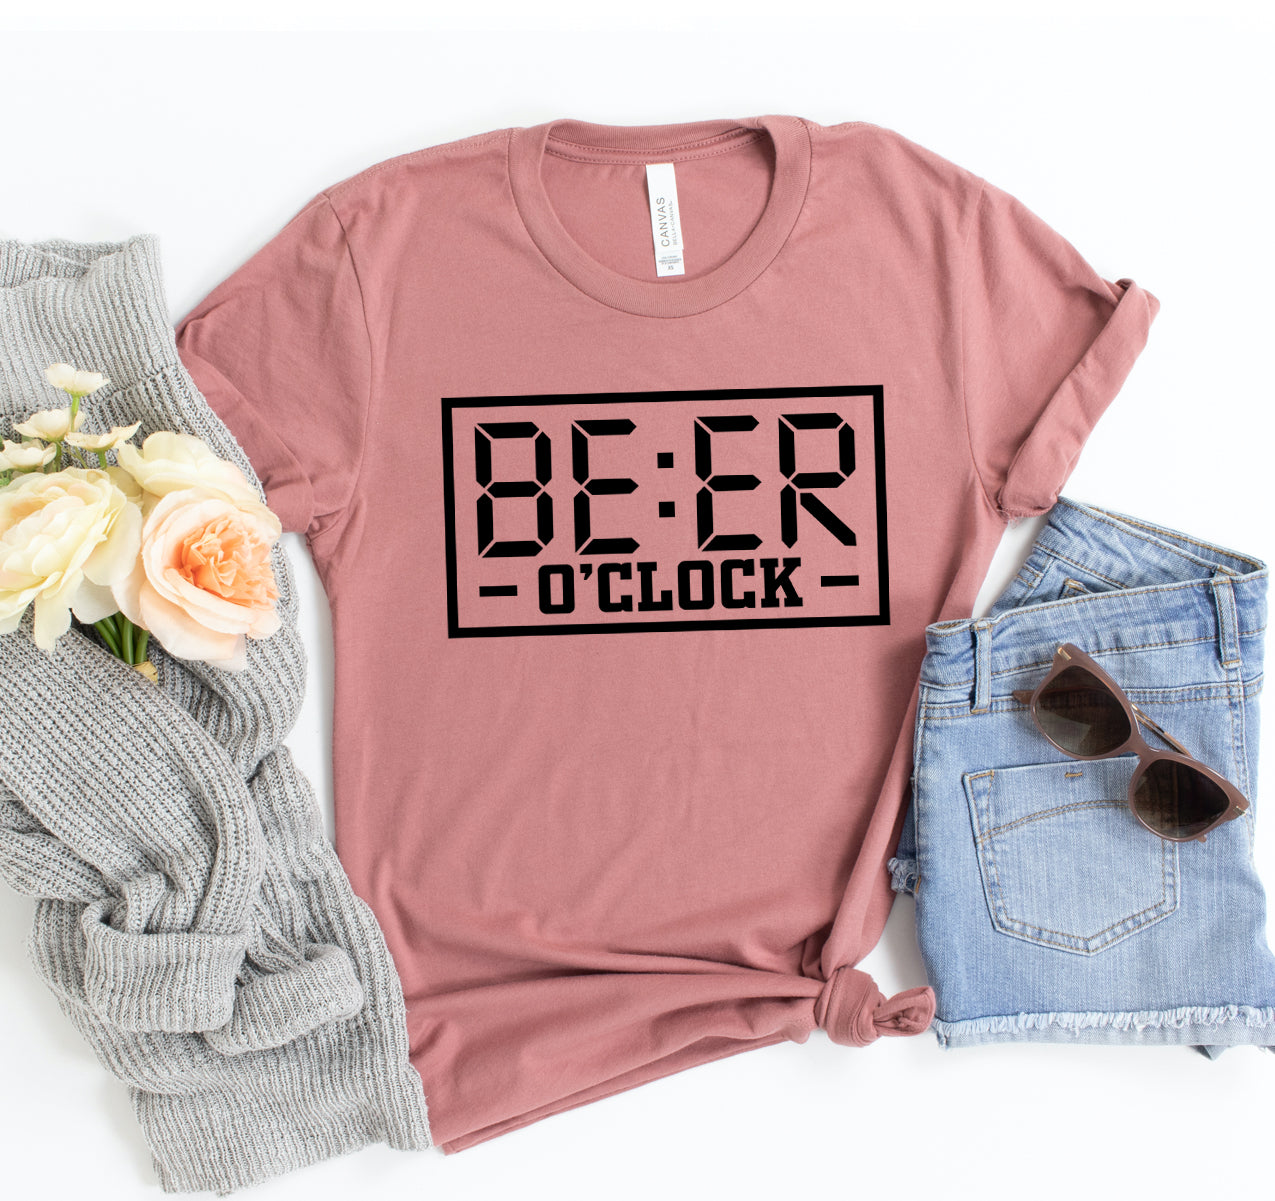 Beer 'O' Clock T-shirt